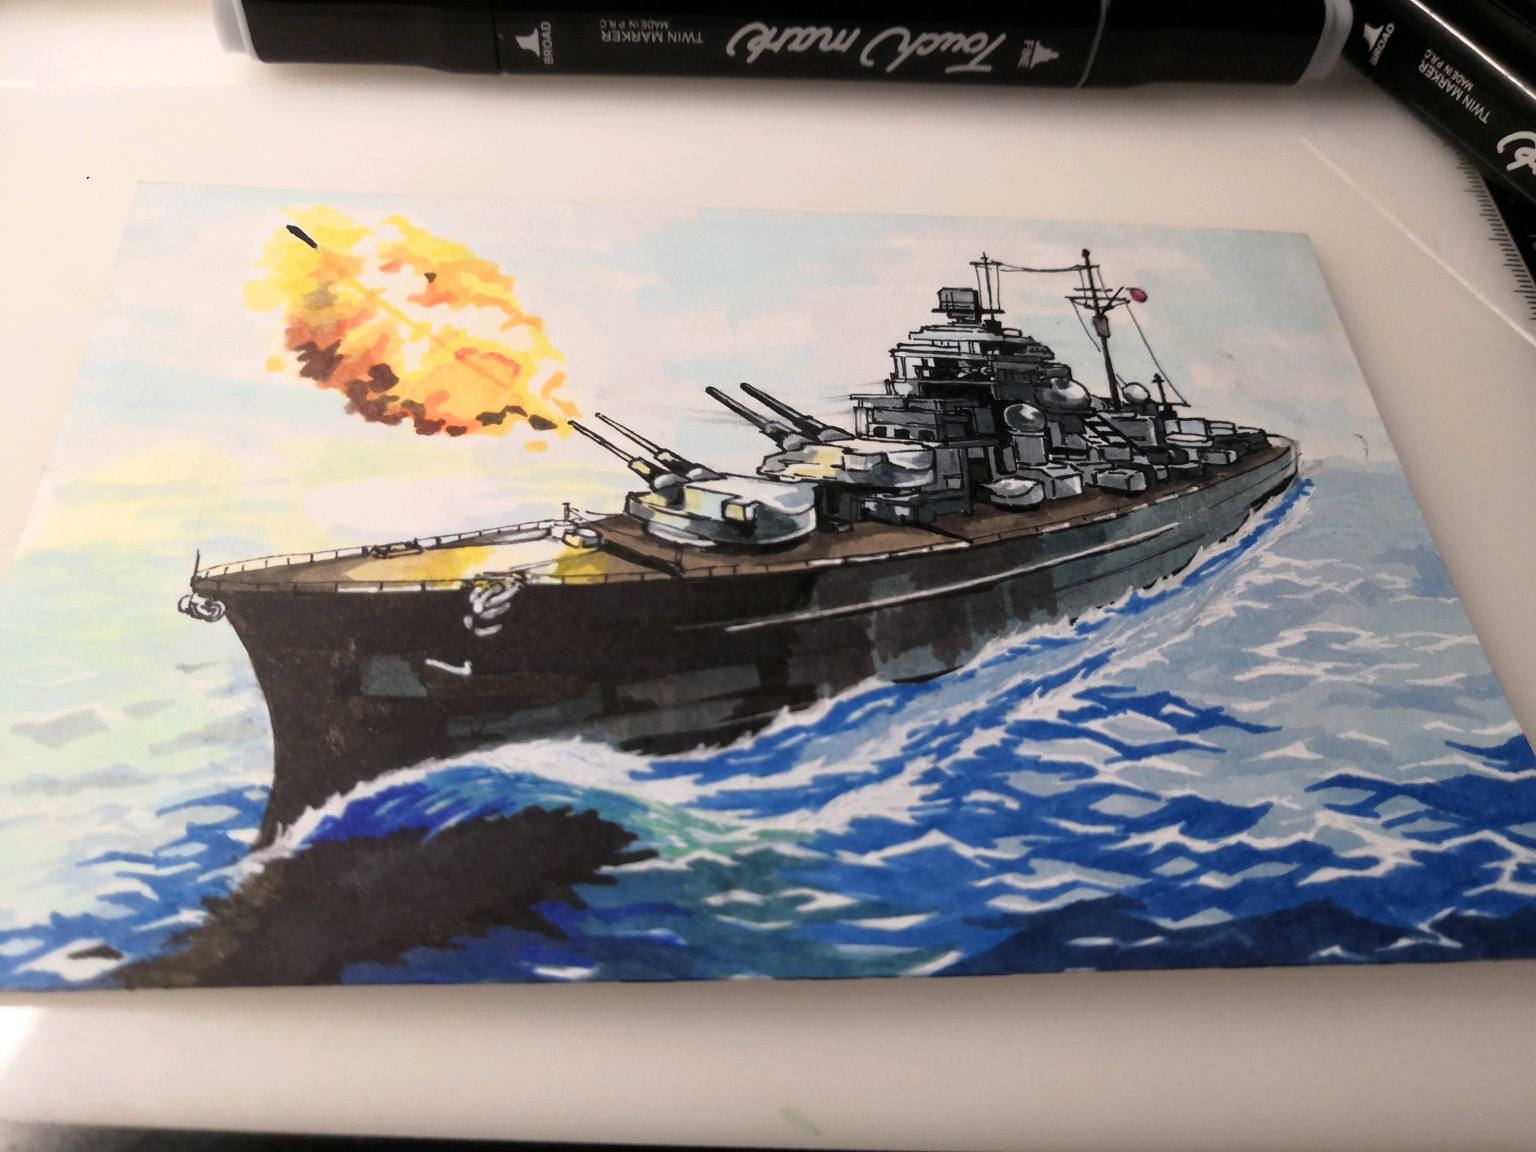 【马克笔练习】如何在明信片上画一艘军舰?